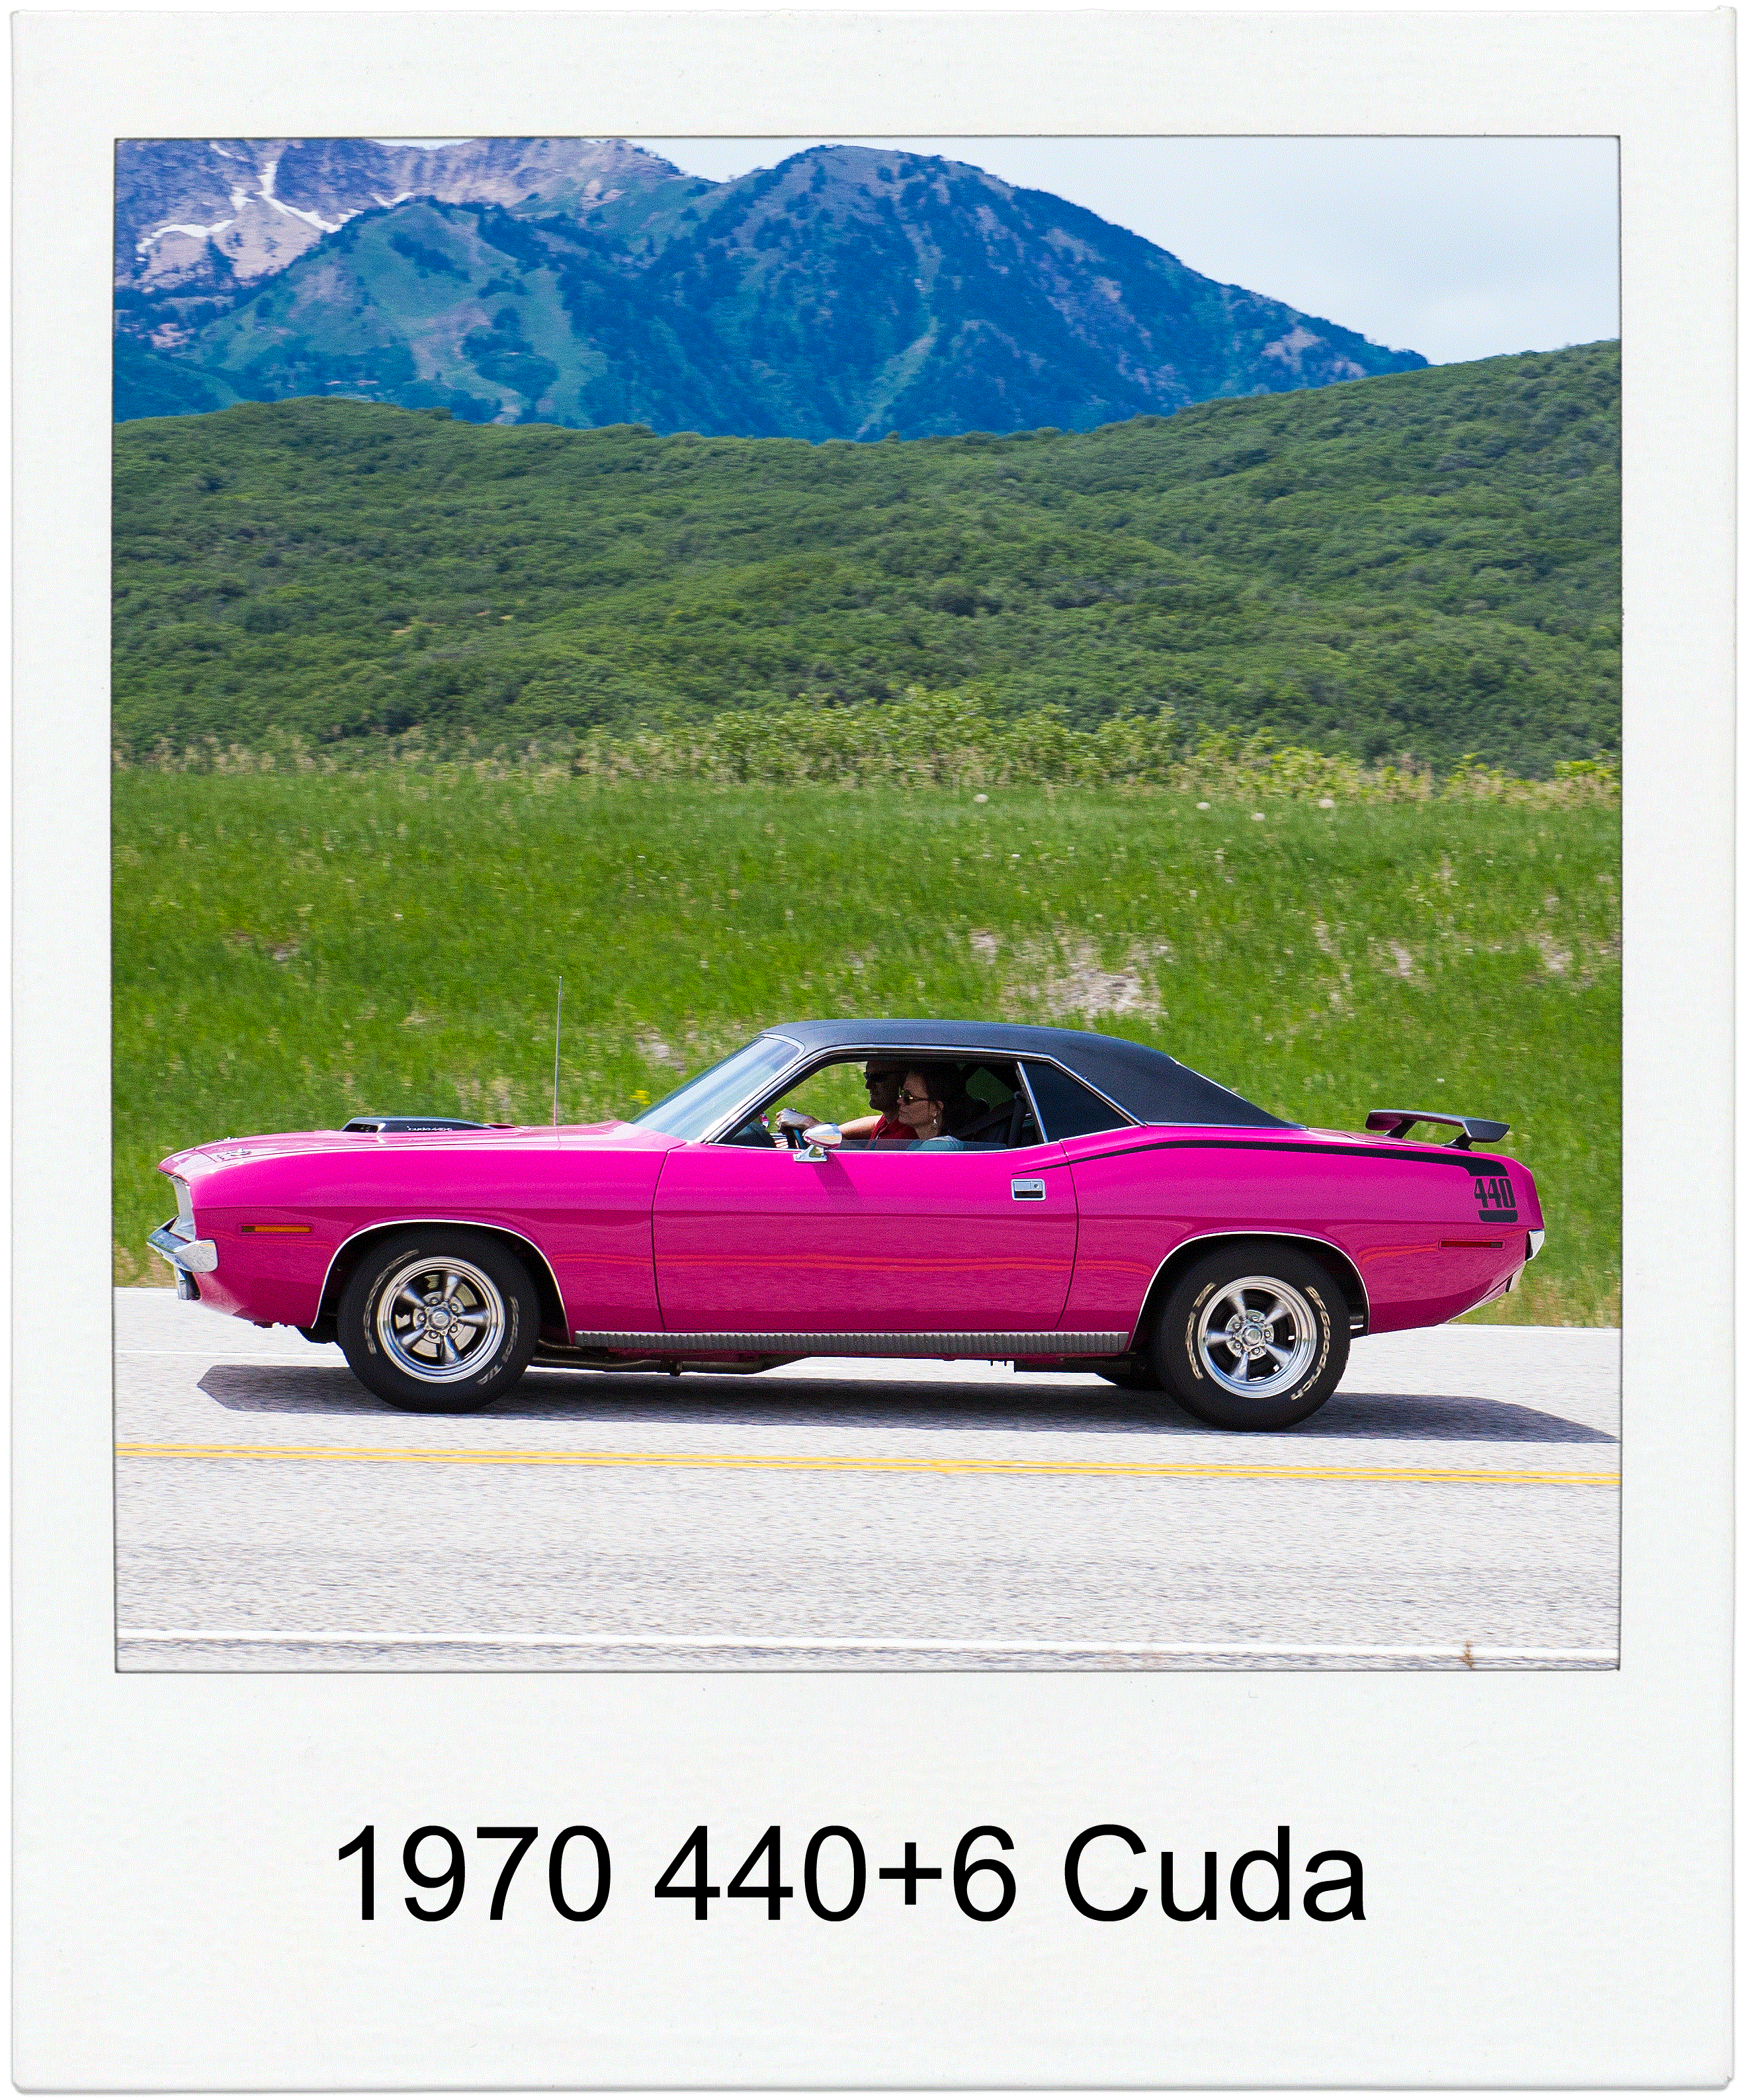 1970 440+6 Cuda